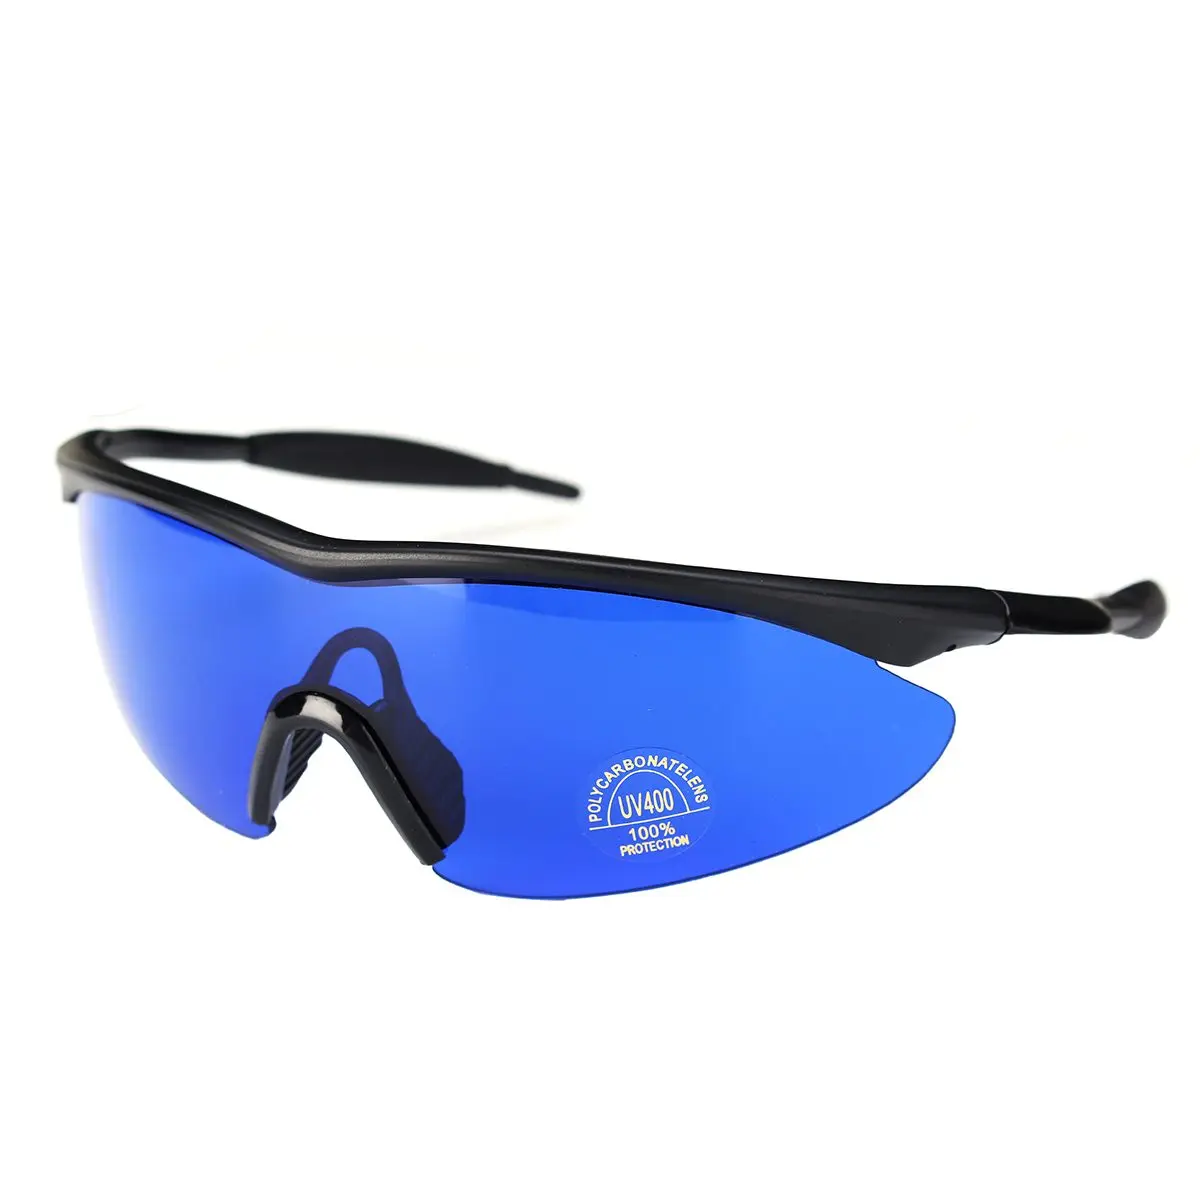 Очки для мужчин и женщин в стиле ретро, очки для гольфа, очки с голубыми линзами, УФ 400, очки для защиты глаз, спортивные очки, солнцезащитные очки с коробкой, аксессуары для гольфа